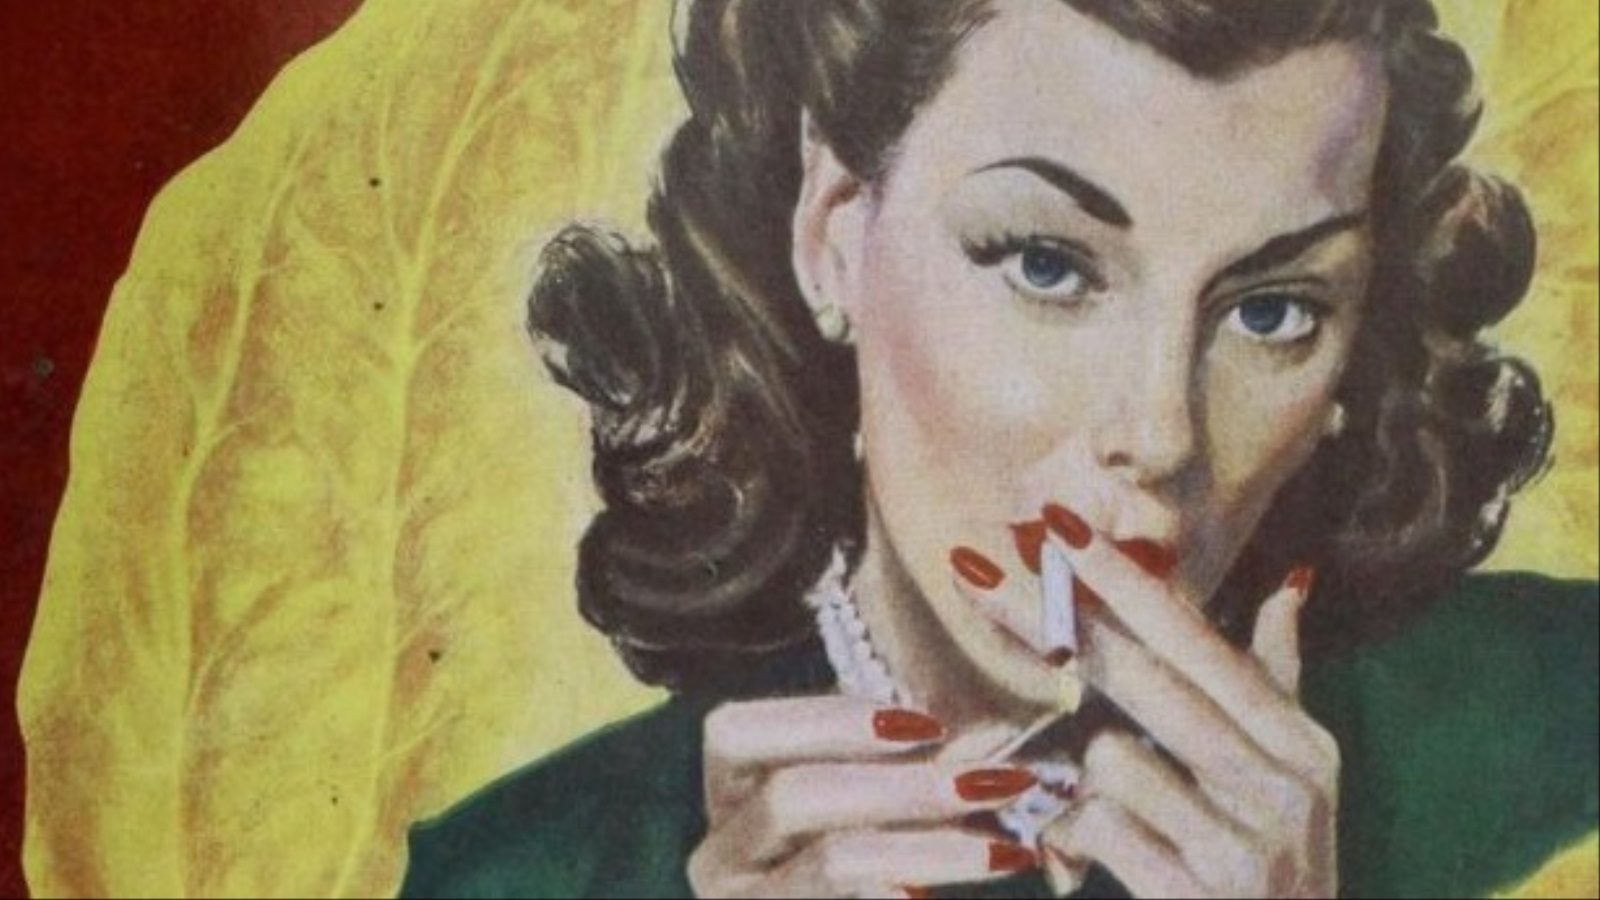 شركات التبغ روجت السجائر كرمز لتمكين المرأة (مواقع التواصل)